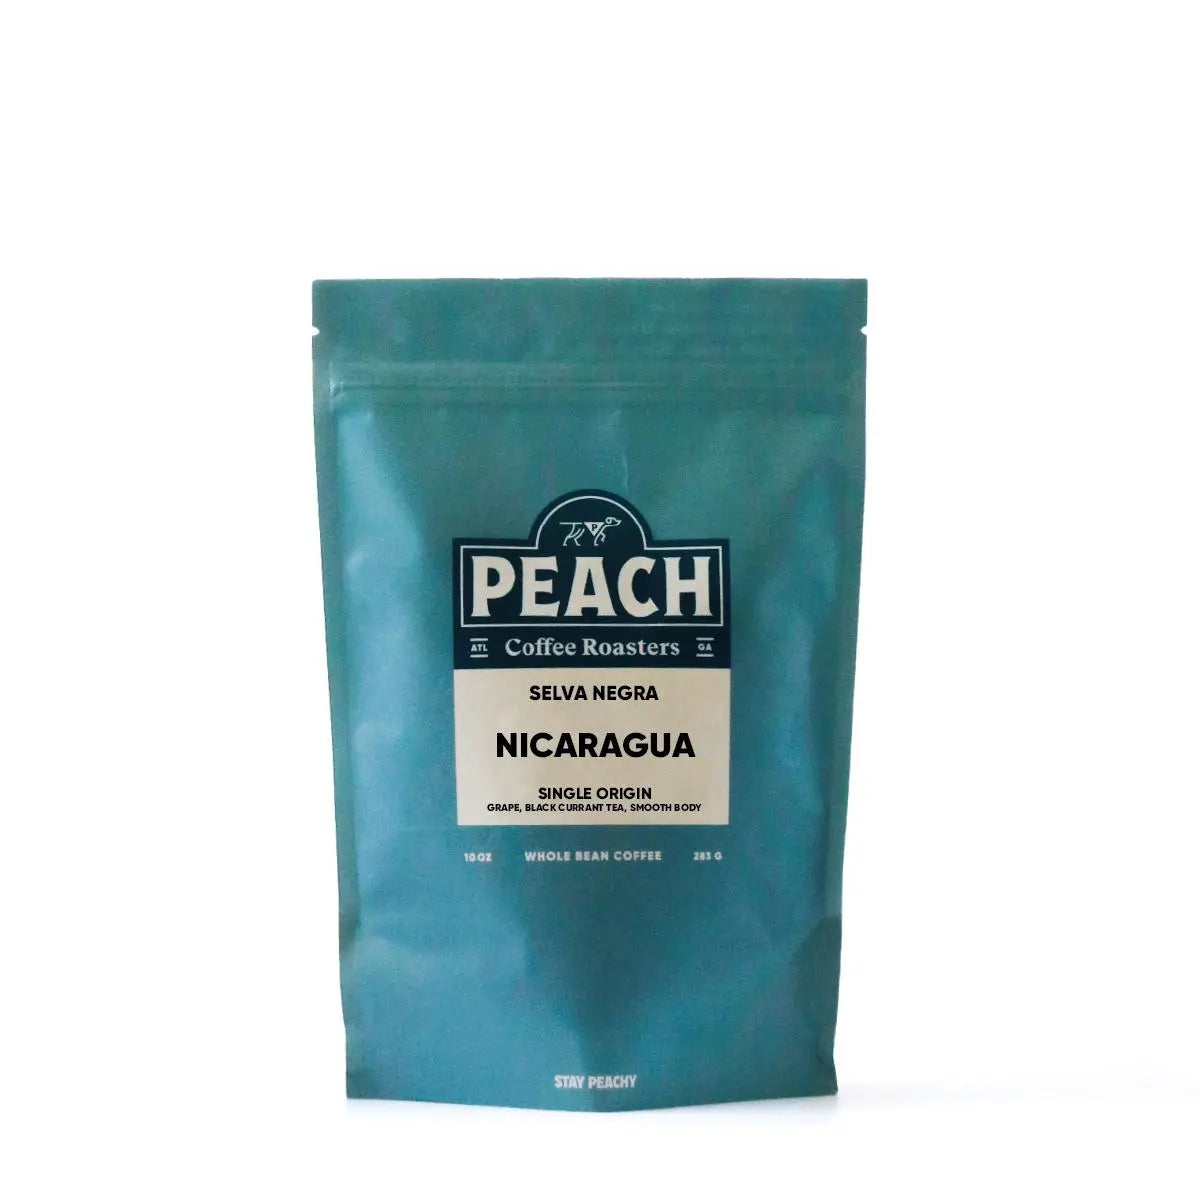 Nicaragua, Selva Negra - Medium Roast - Full Natural Peach Coffee Roasters